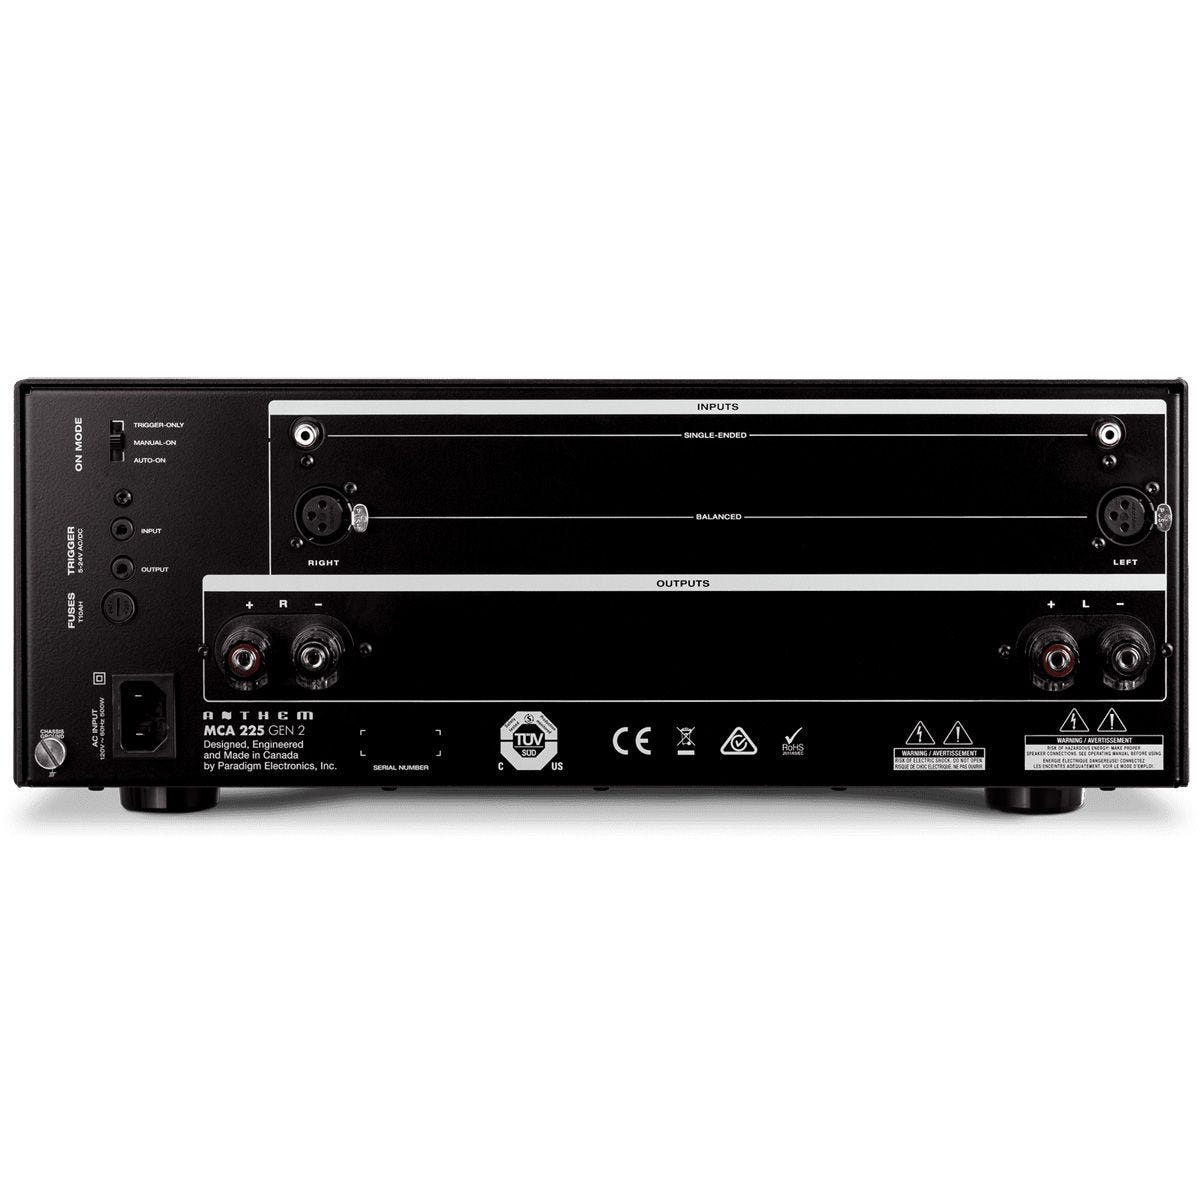 Anthem MCA 225 Gen2 - 2 Channel Power Amp